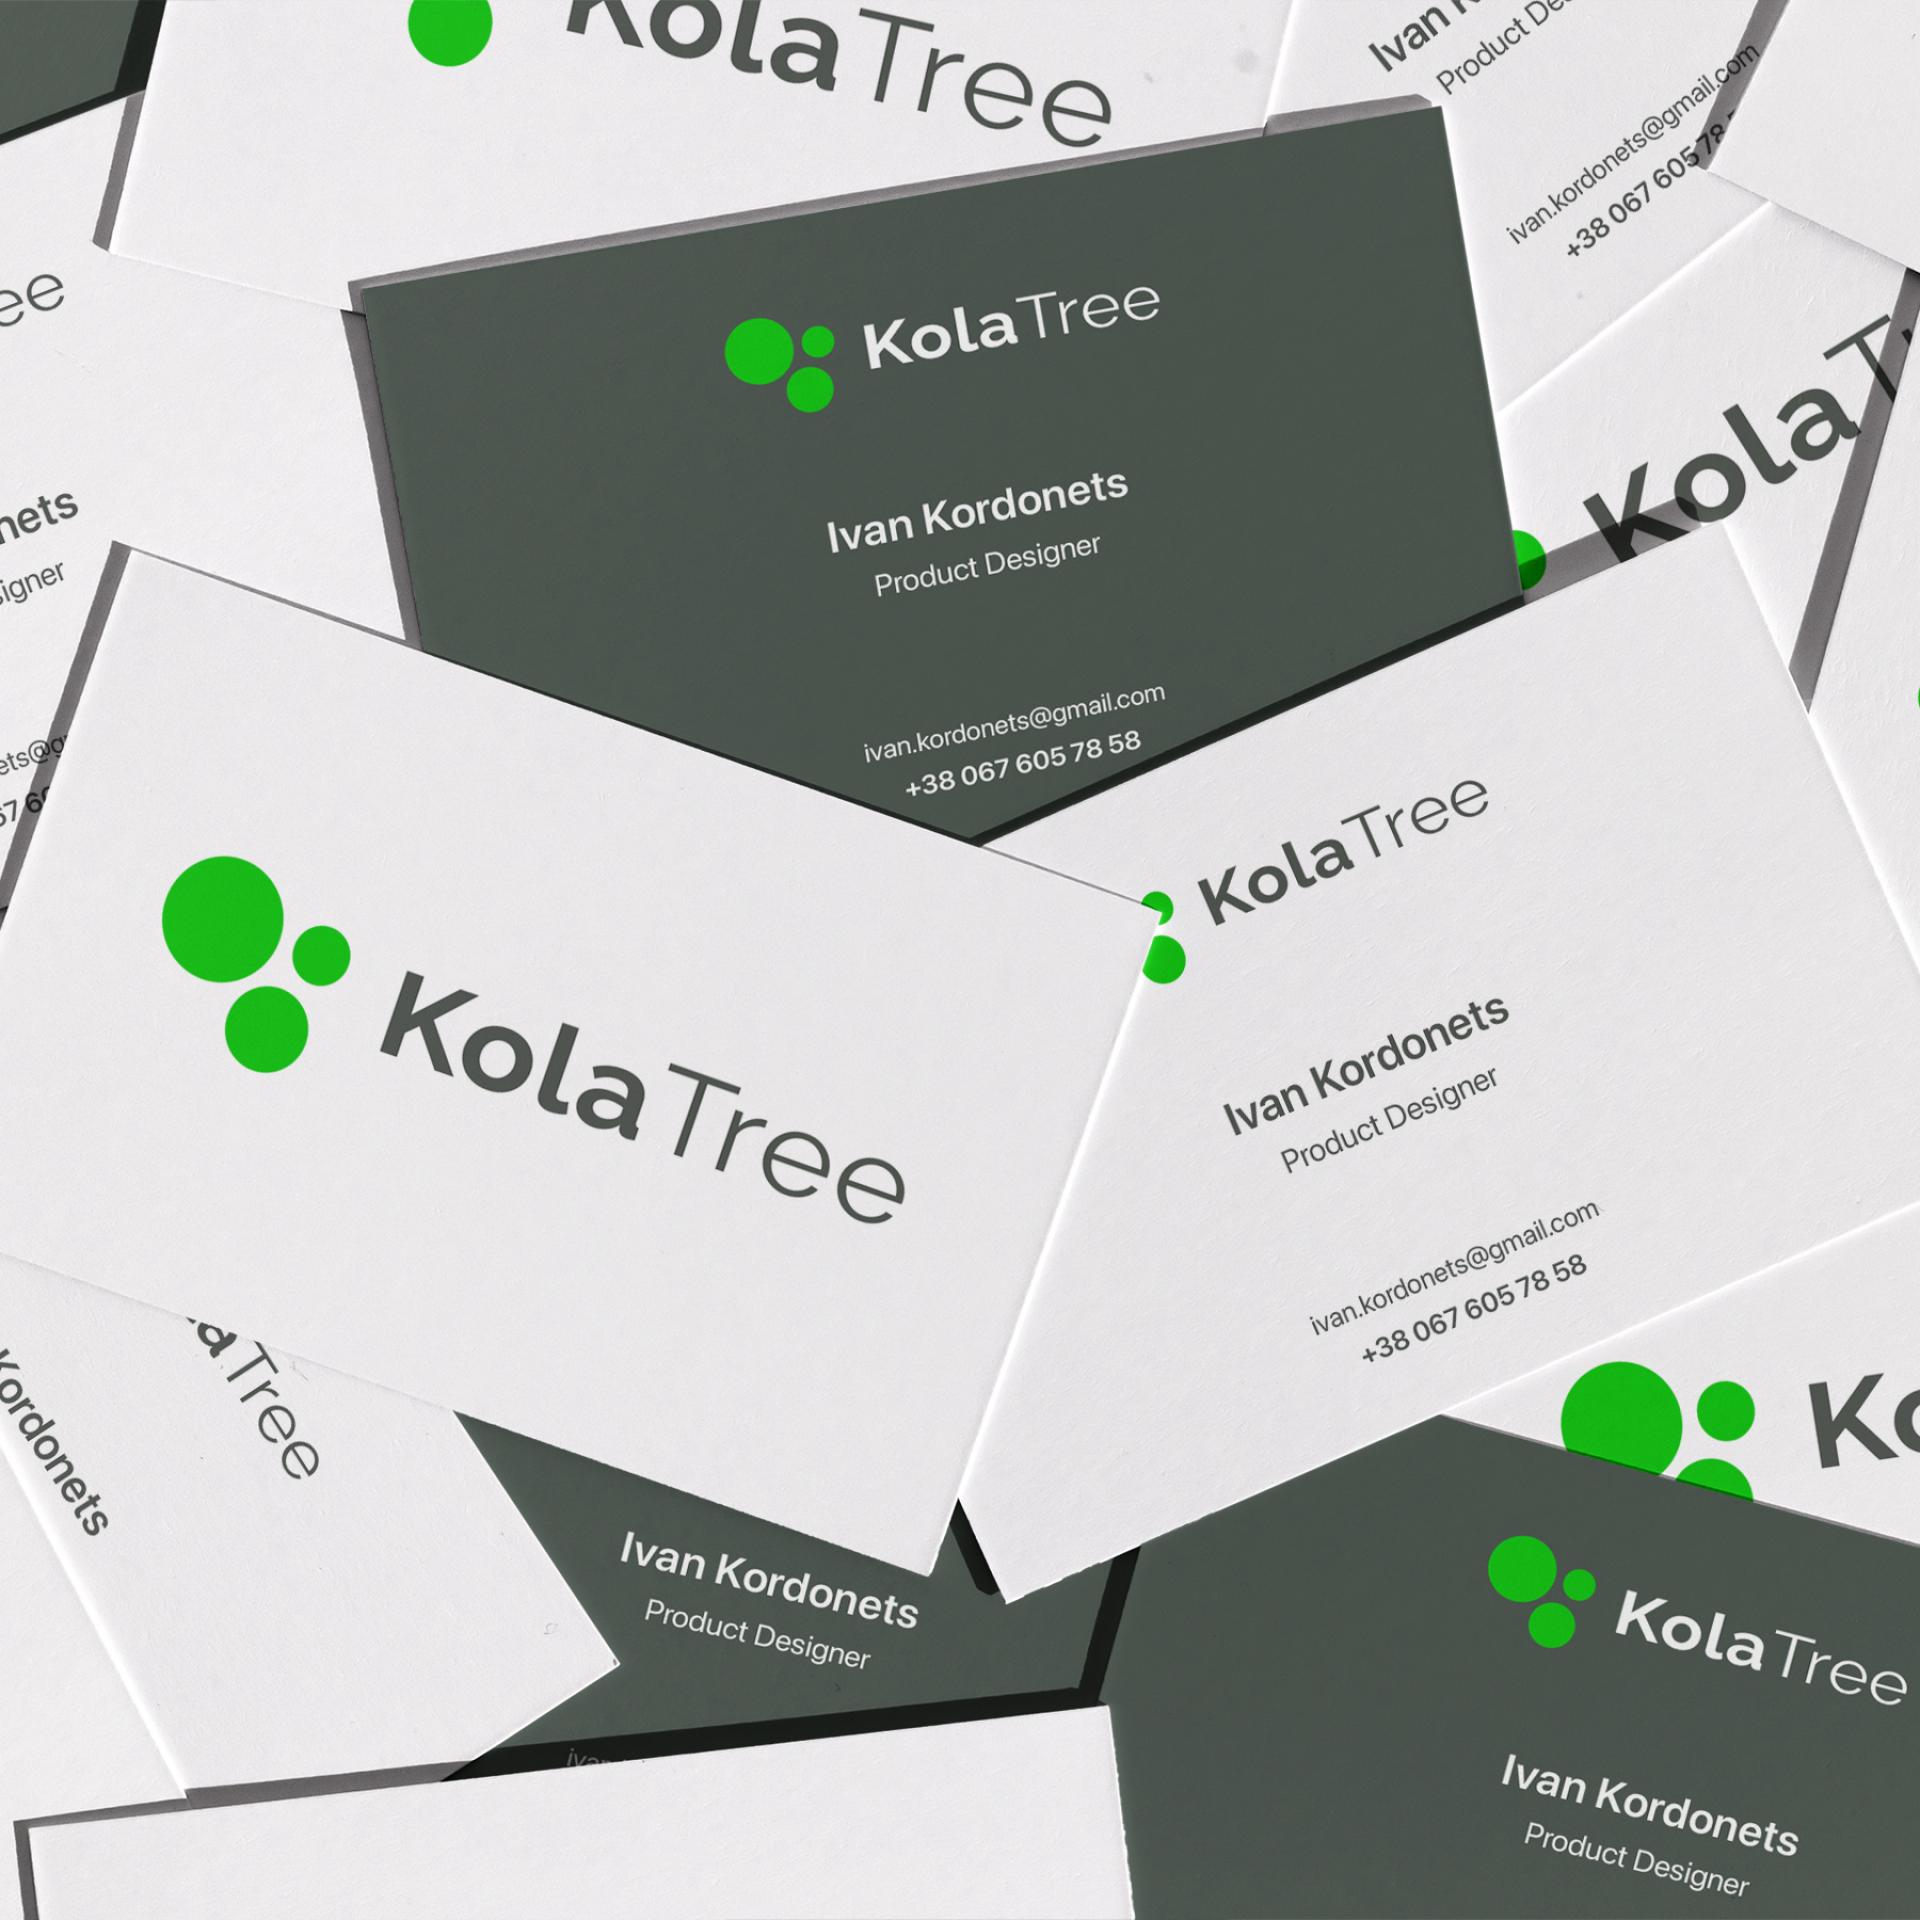 Vega Digital Awards Winner - Kola Tree, Kola Tree